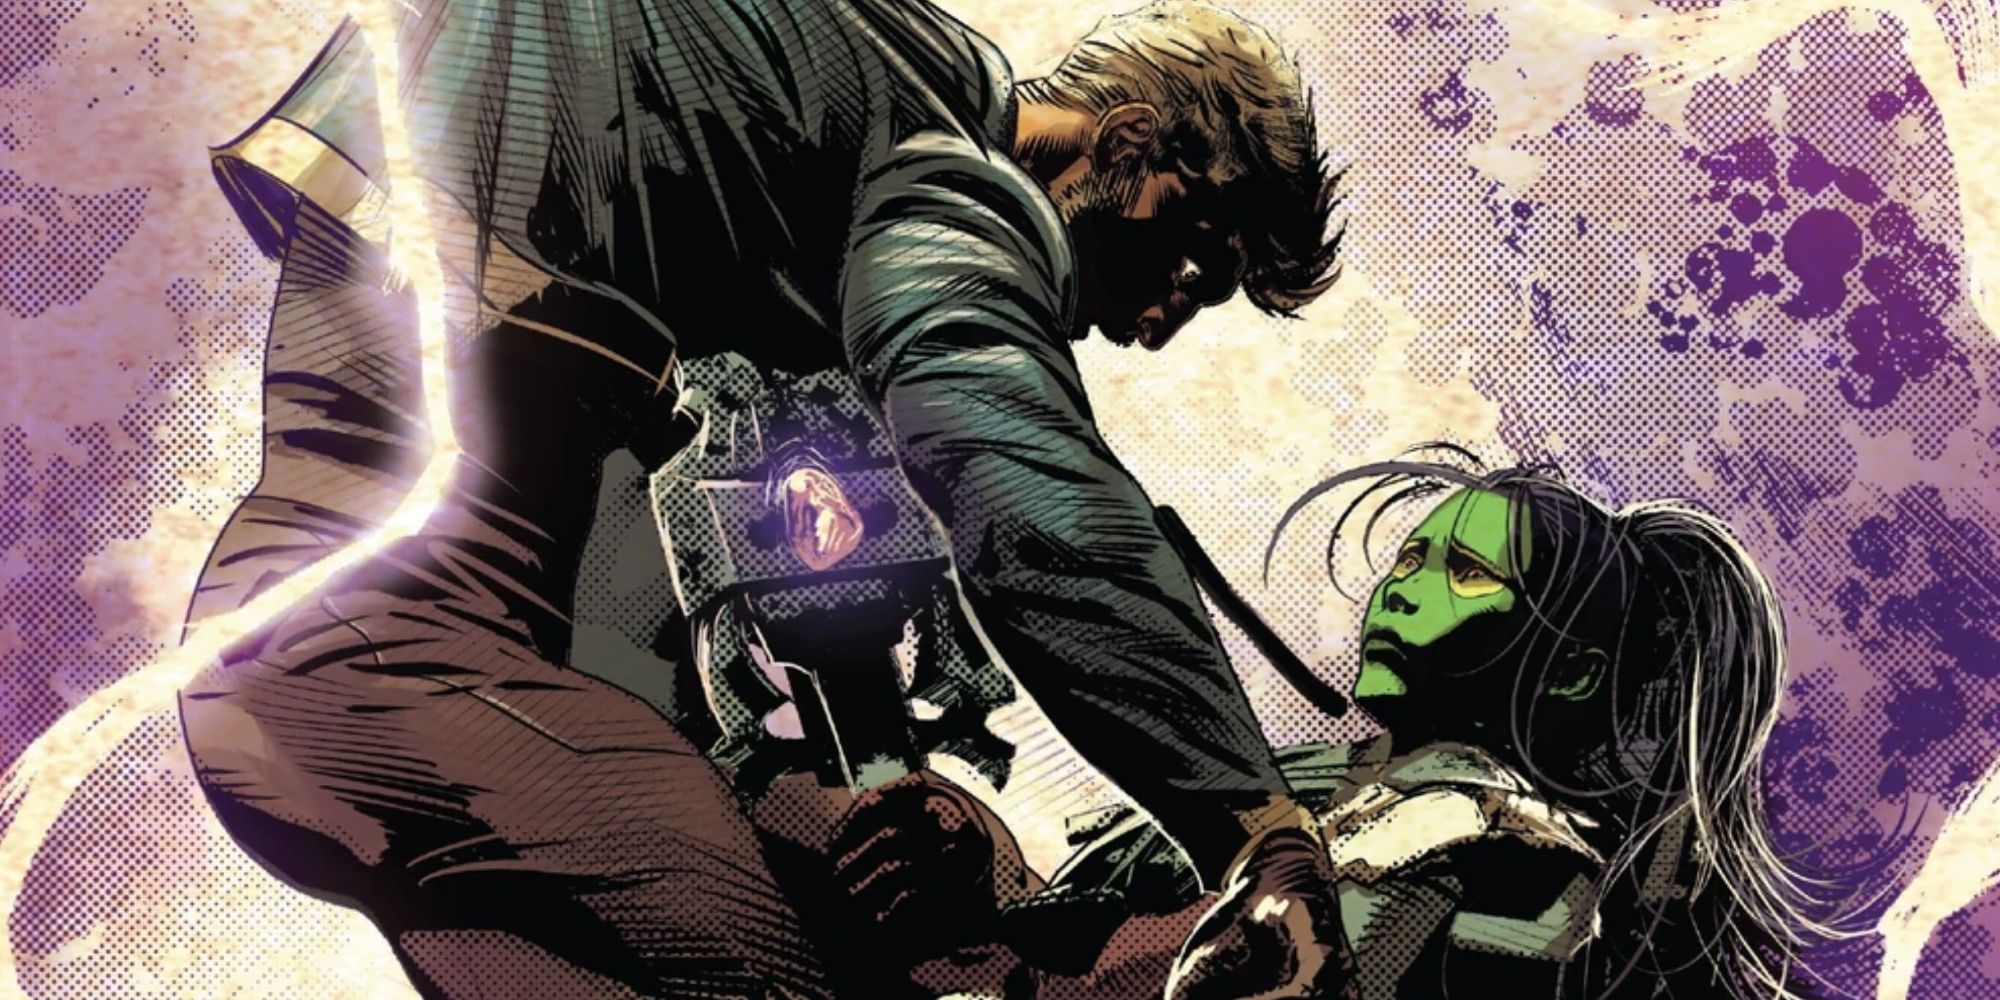 Gamora impales Star-Lord in Marvel Comics.